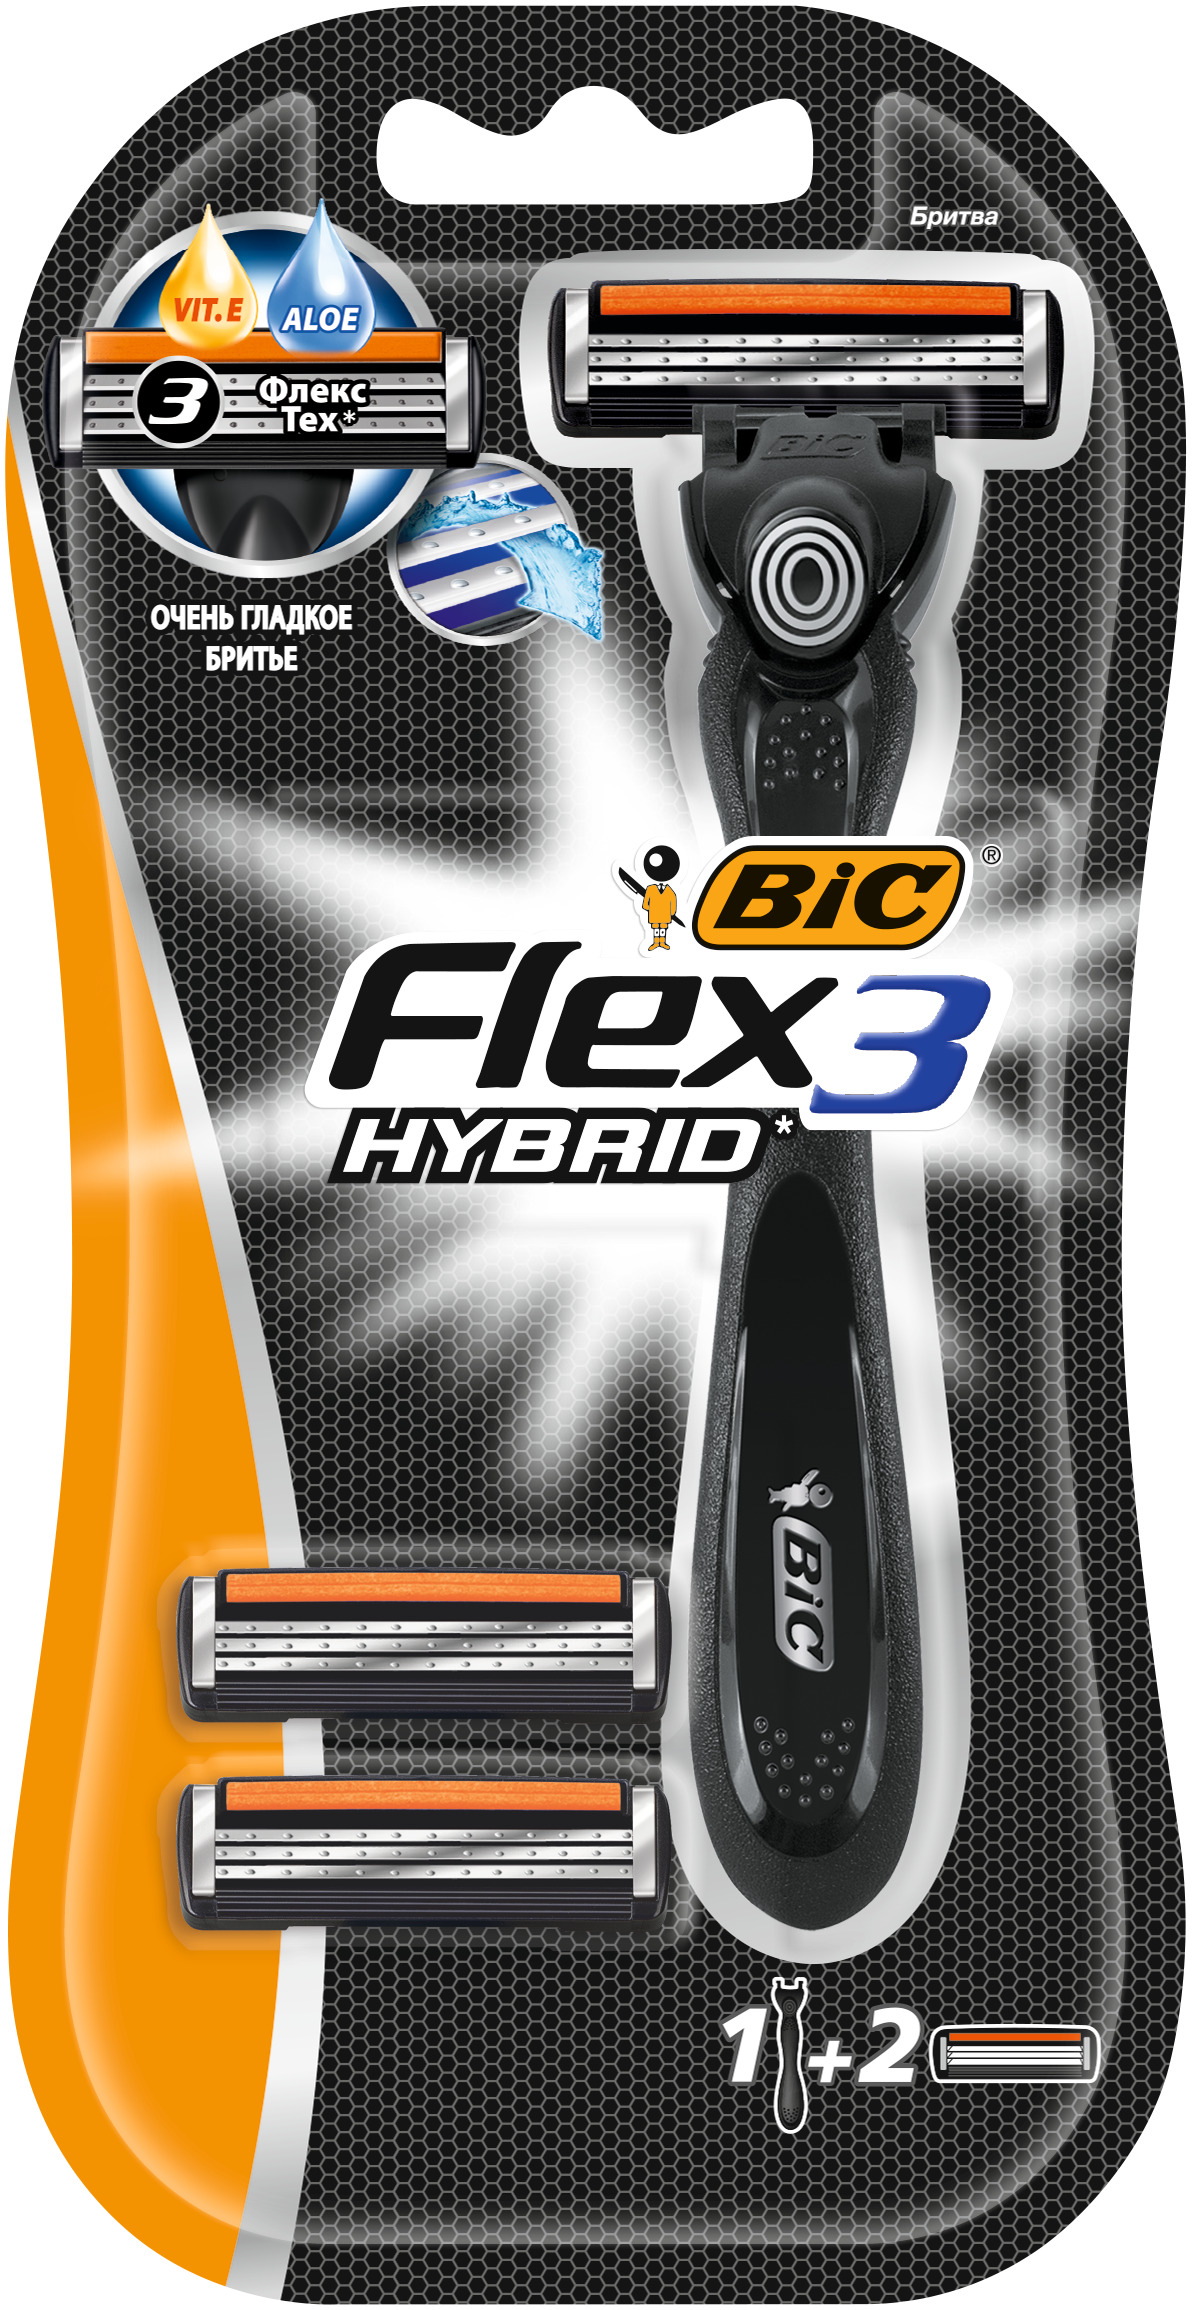 Bic flex hybrid купить. Станок для бритья BIC Flex 3 Hybrid. Бритва BIC Flex 5 Hybrid. BIC Flex 3 Hybrid лезвия. Сменные кассеты для бритья flex3 Hybrid BIC 4шт.